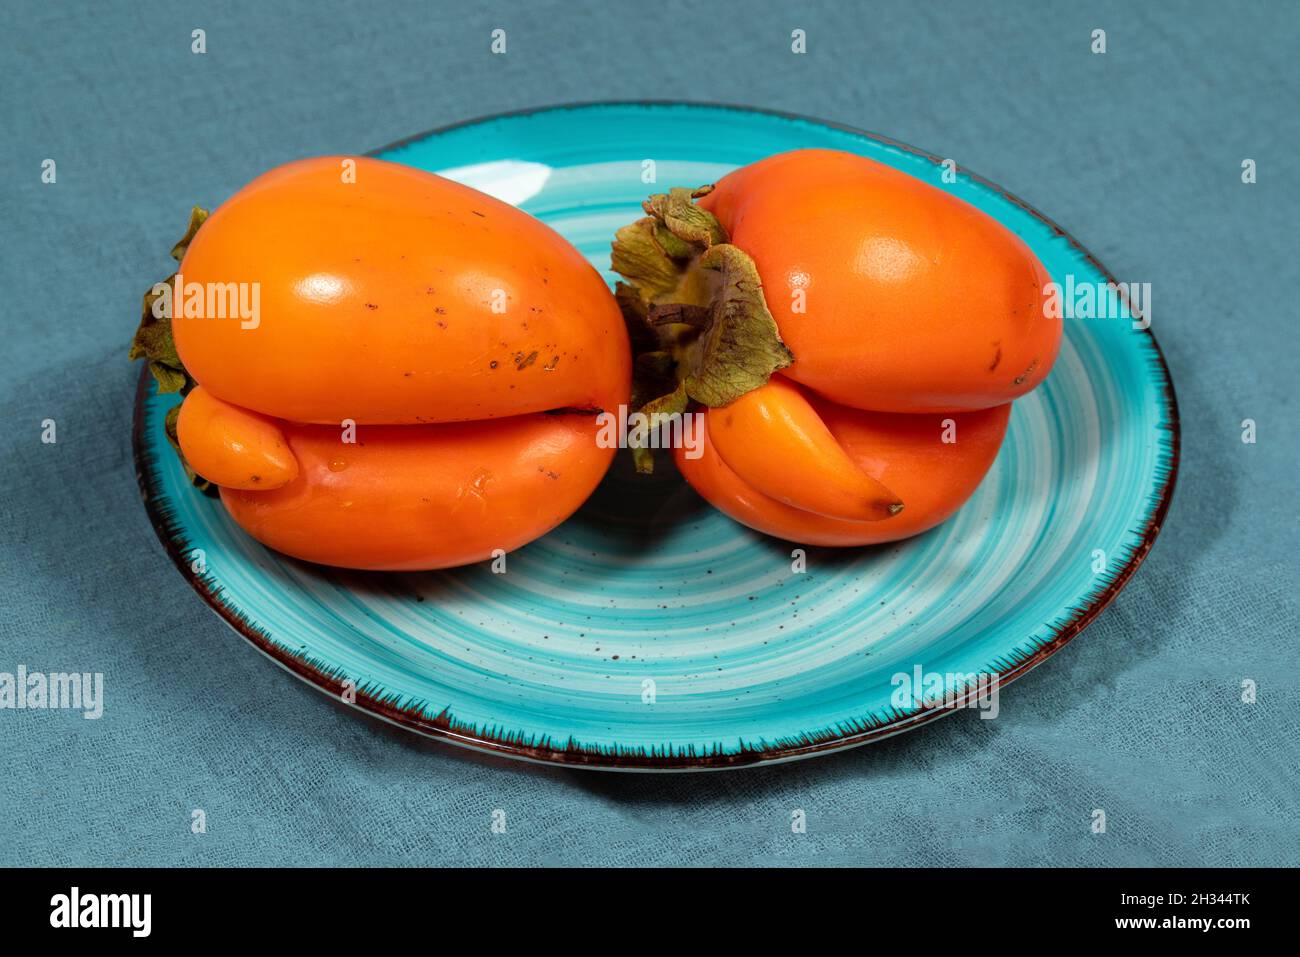 Piatto turchese con due brutti persimmoni arancioni su tovagliolo in tessuto turchese scuro da vicino. Frutta fresca sana biologica. Concetto di cibo senza rifiuti. Reas Foto Stock